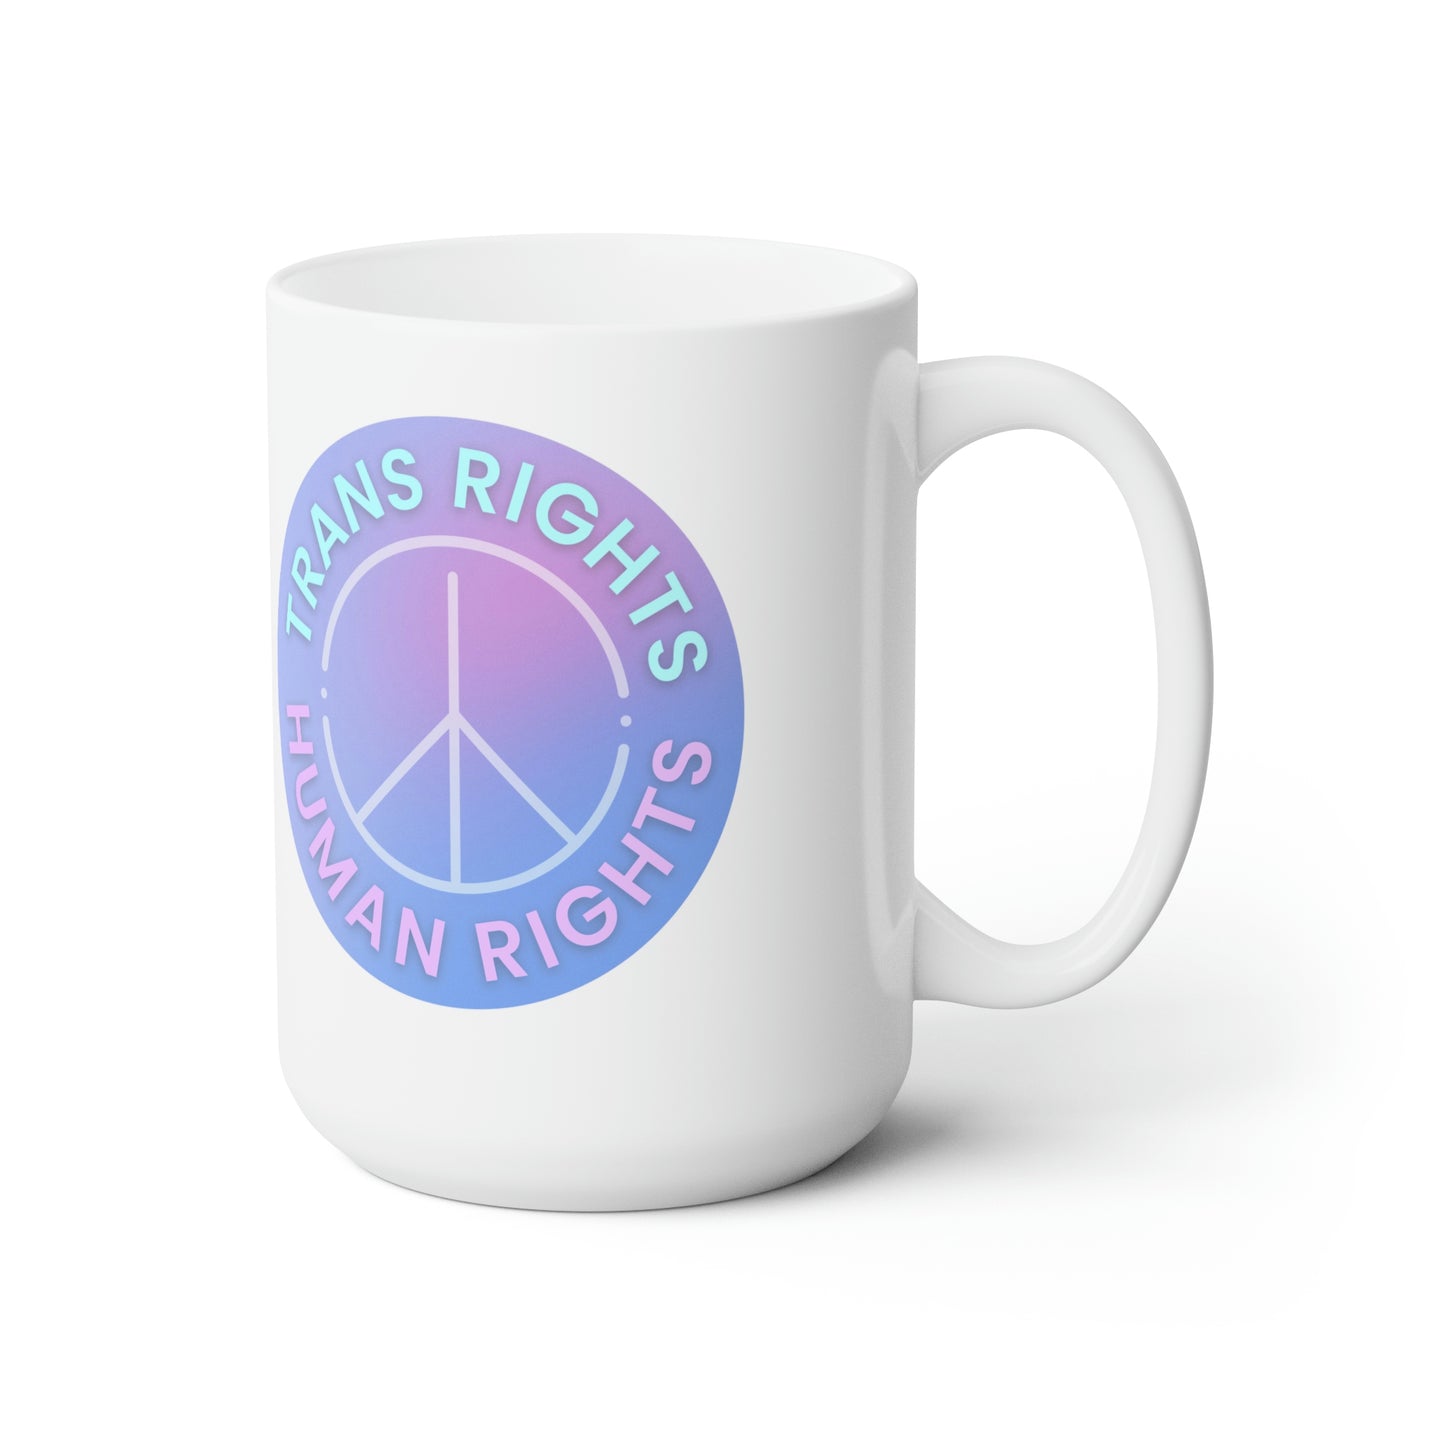 Trans Rights are Human Rights Ceramic Mug 15oz